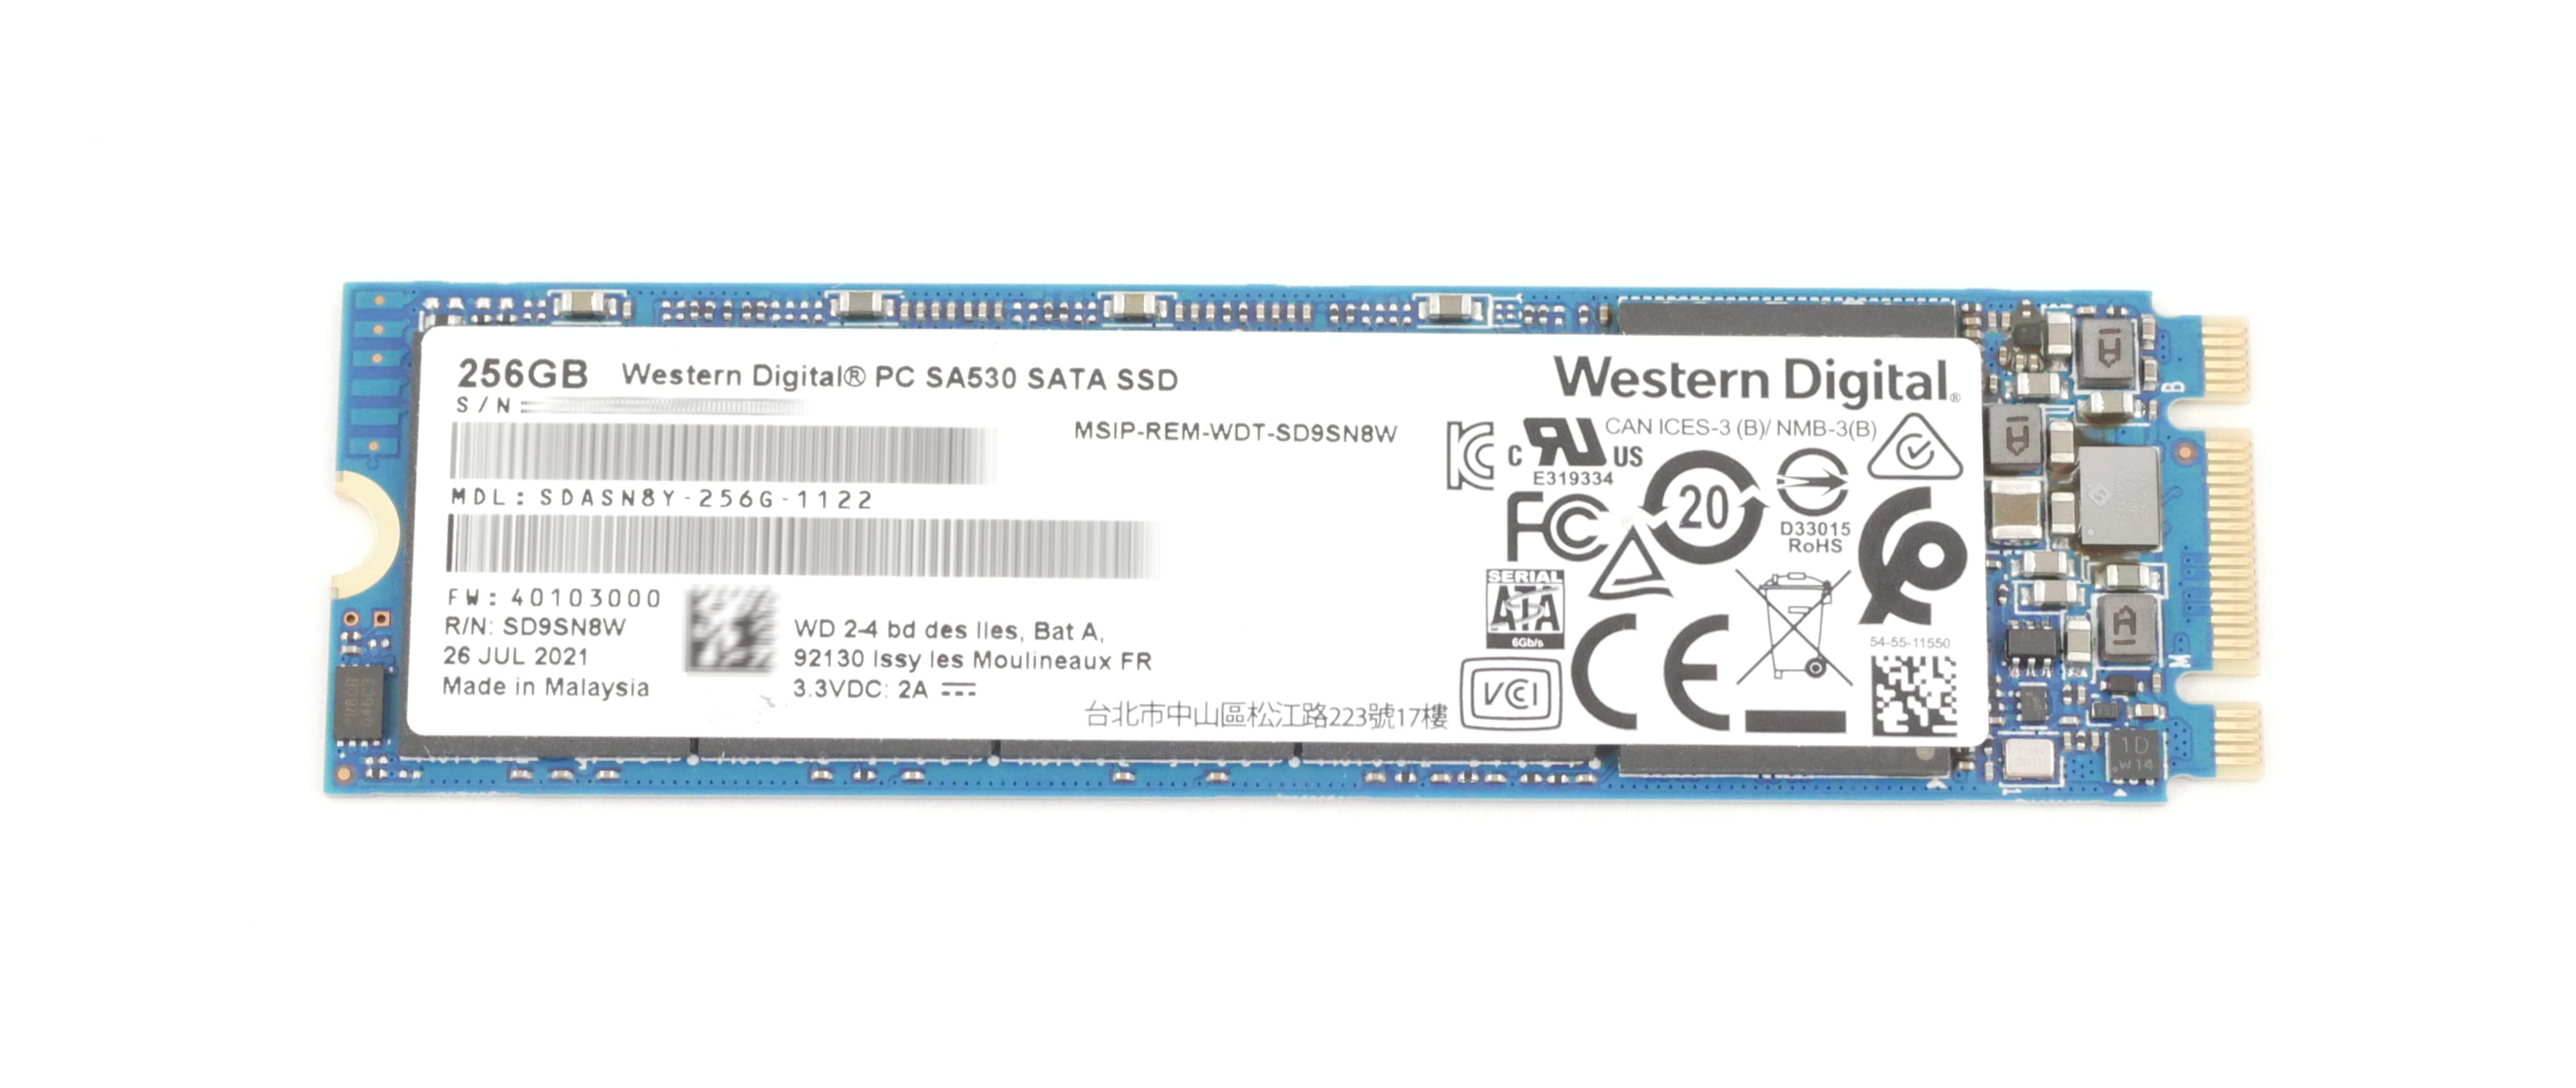 WD 256GB SA530 512G SSD M.2 2280 SATA 6Gb/s SDASN8Y-256G-1122 - Click Image to Close